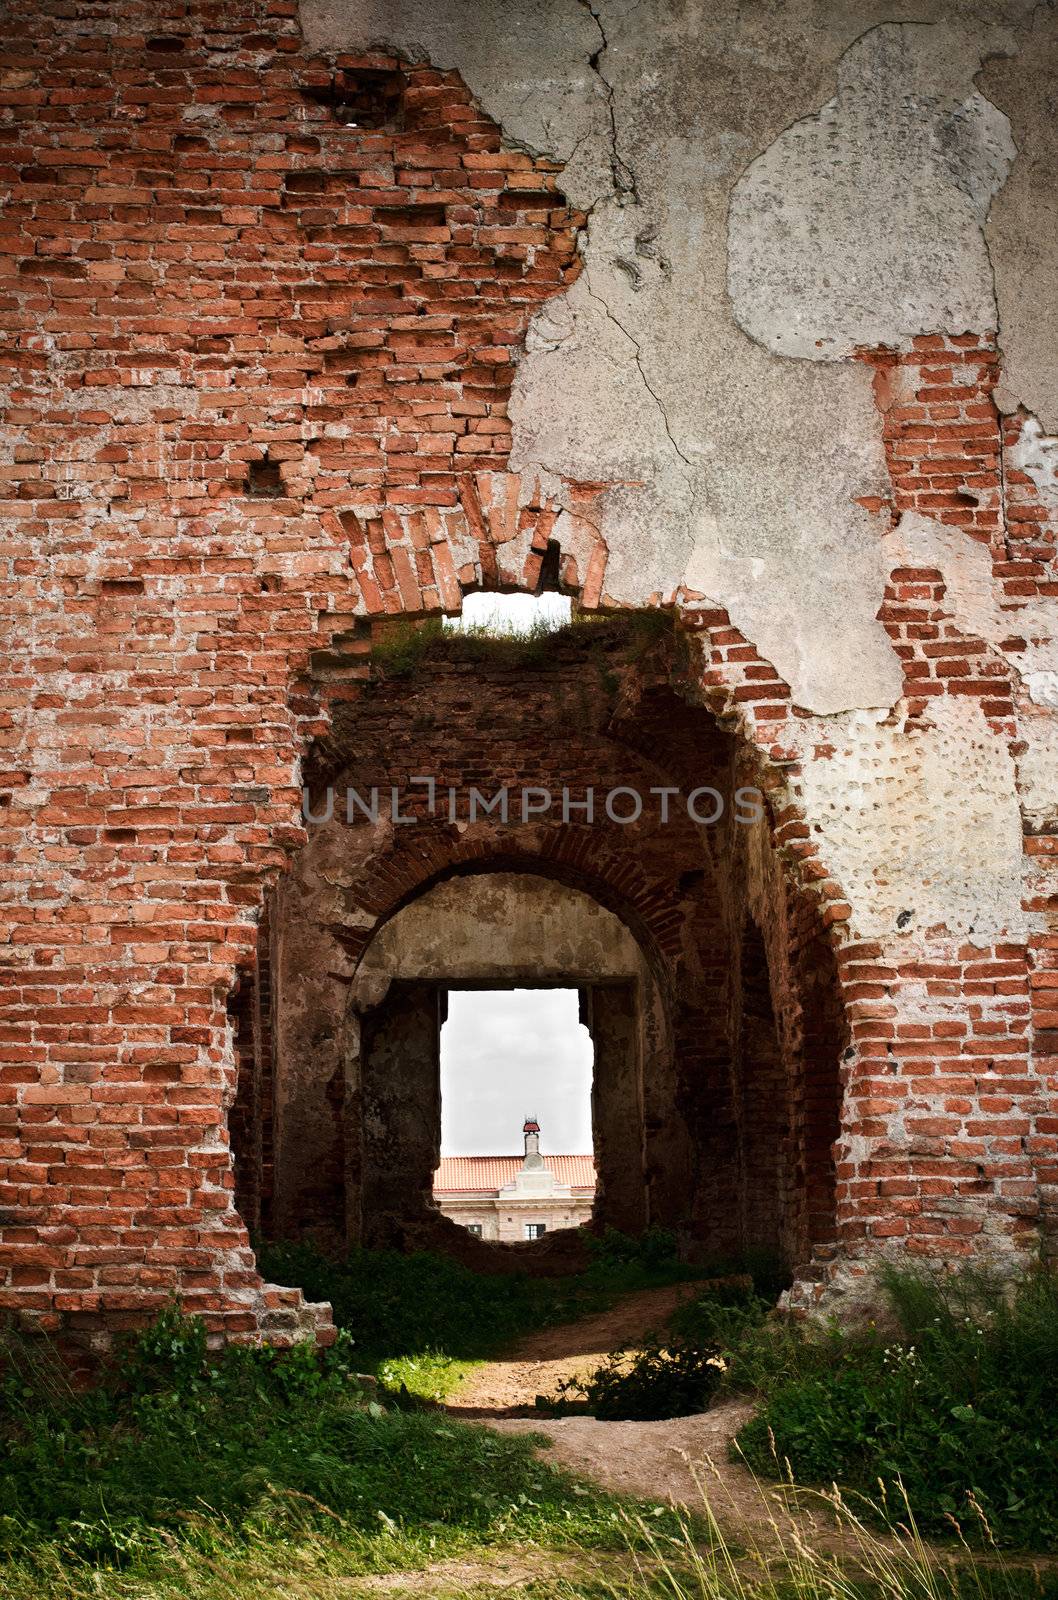 doors in walls of old castle by petr_malyshev